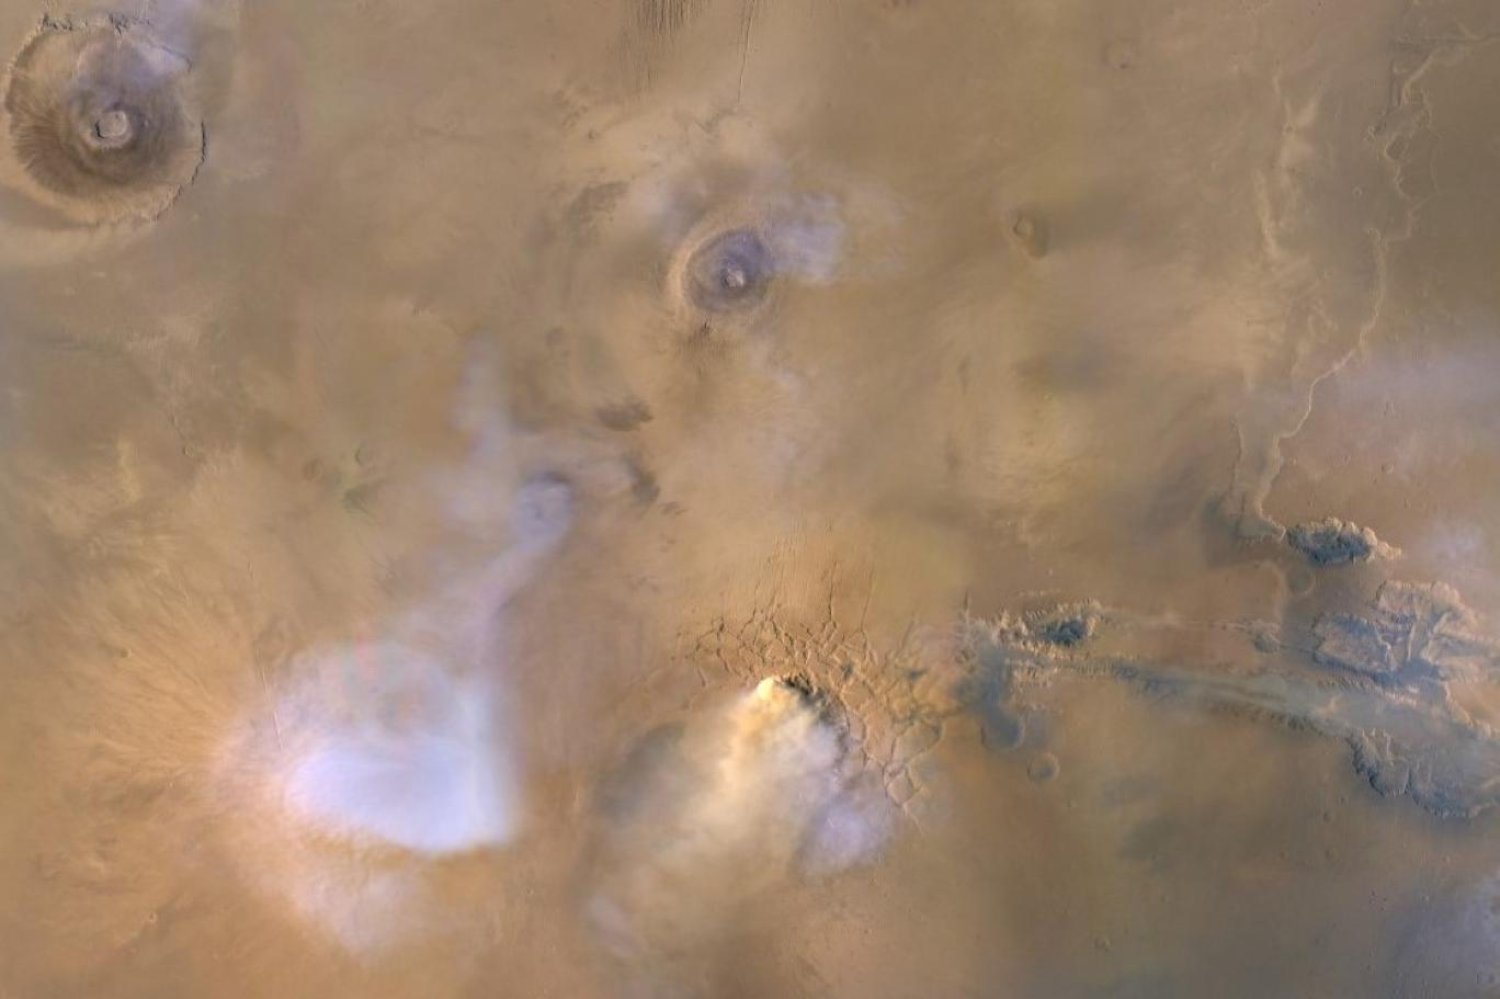 Mars Reconnaissance Orbiter'la 2010'da çekilen bu görüntüde su buharı mavi-beyaz, kum fırtınaları sarı renkte görülüyor (NASA)

